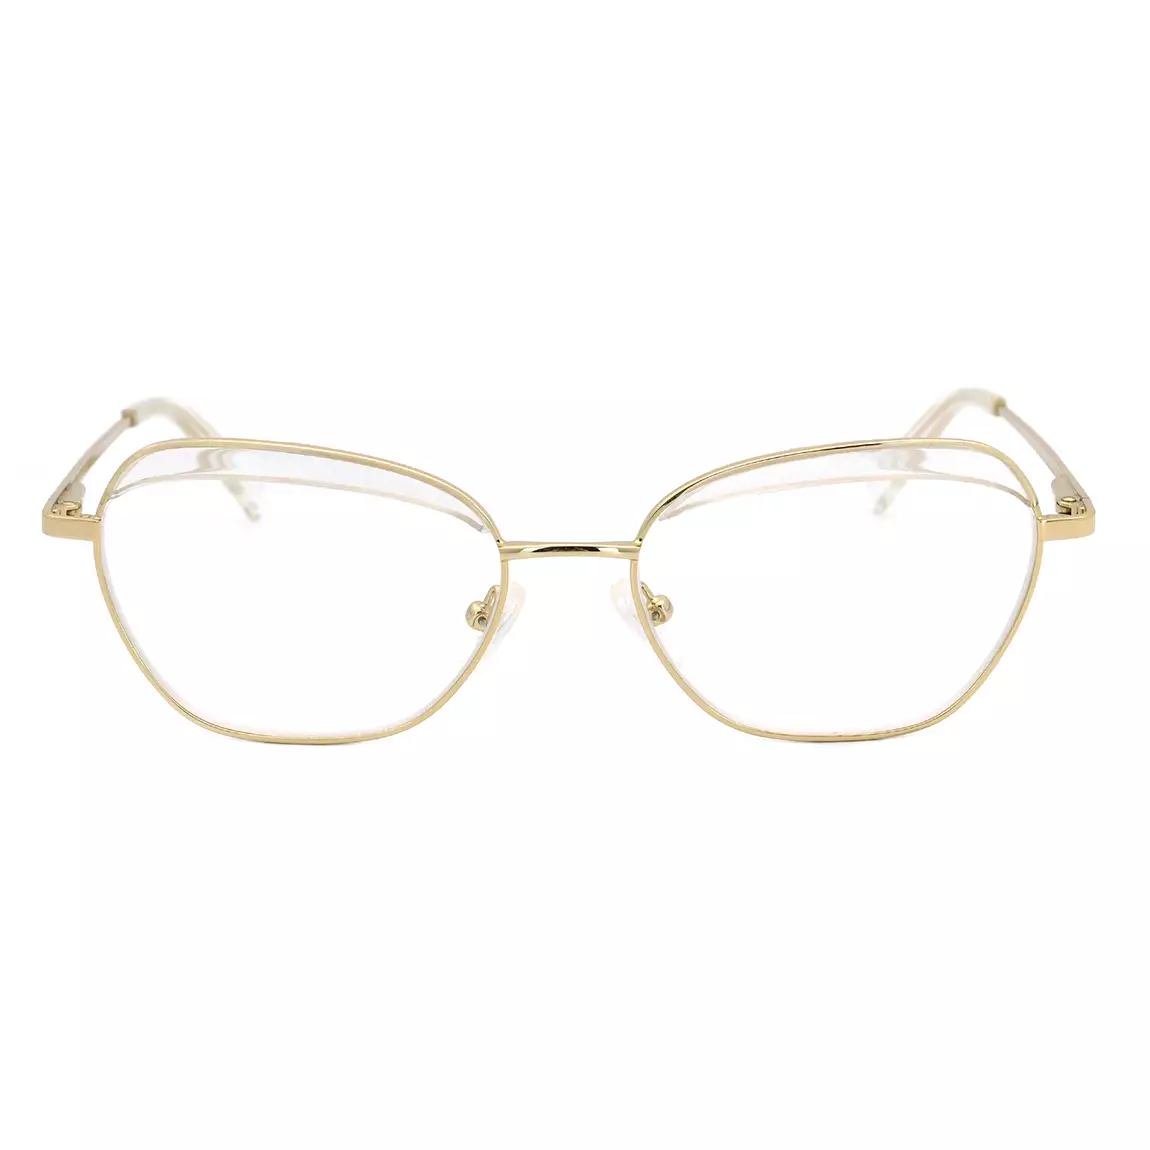 Fashion Metal Eyeglasses Geometric Frame Wholesale brand glasses ...